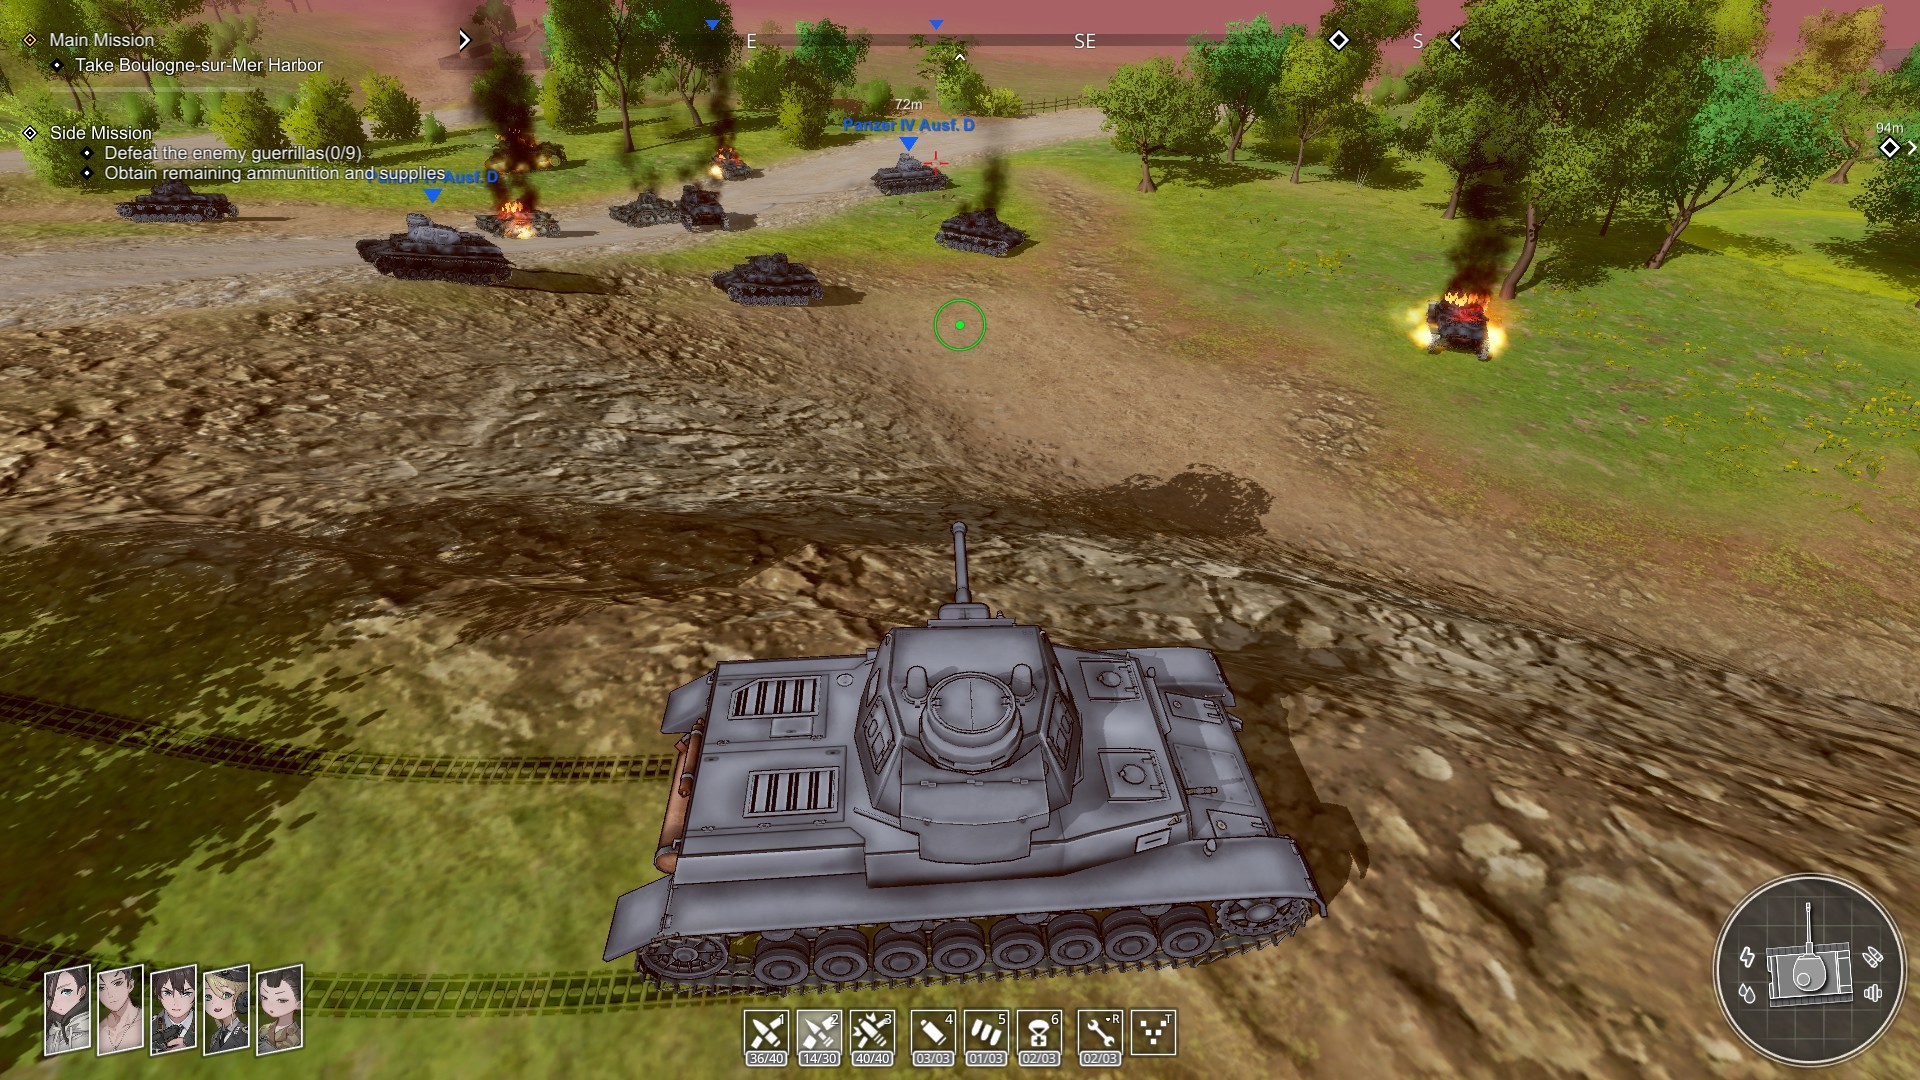 Panzer Knights Steam Altergift